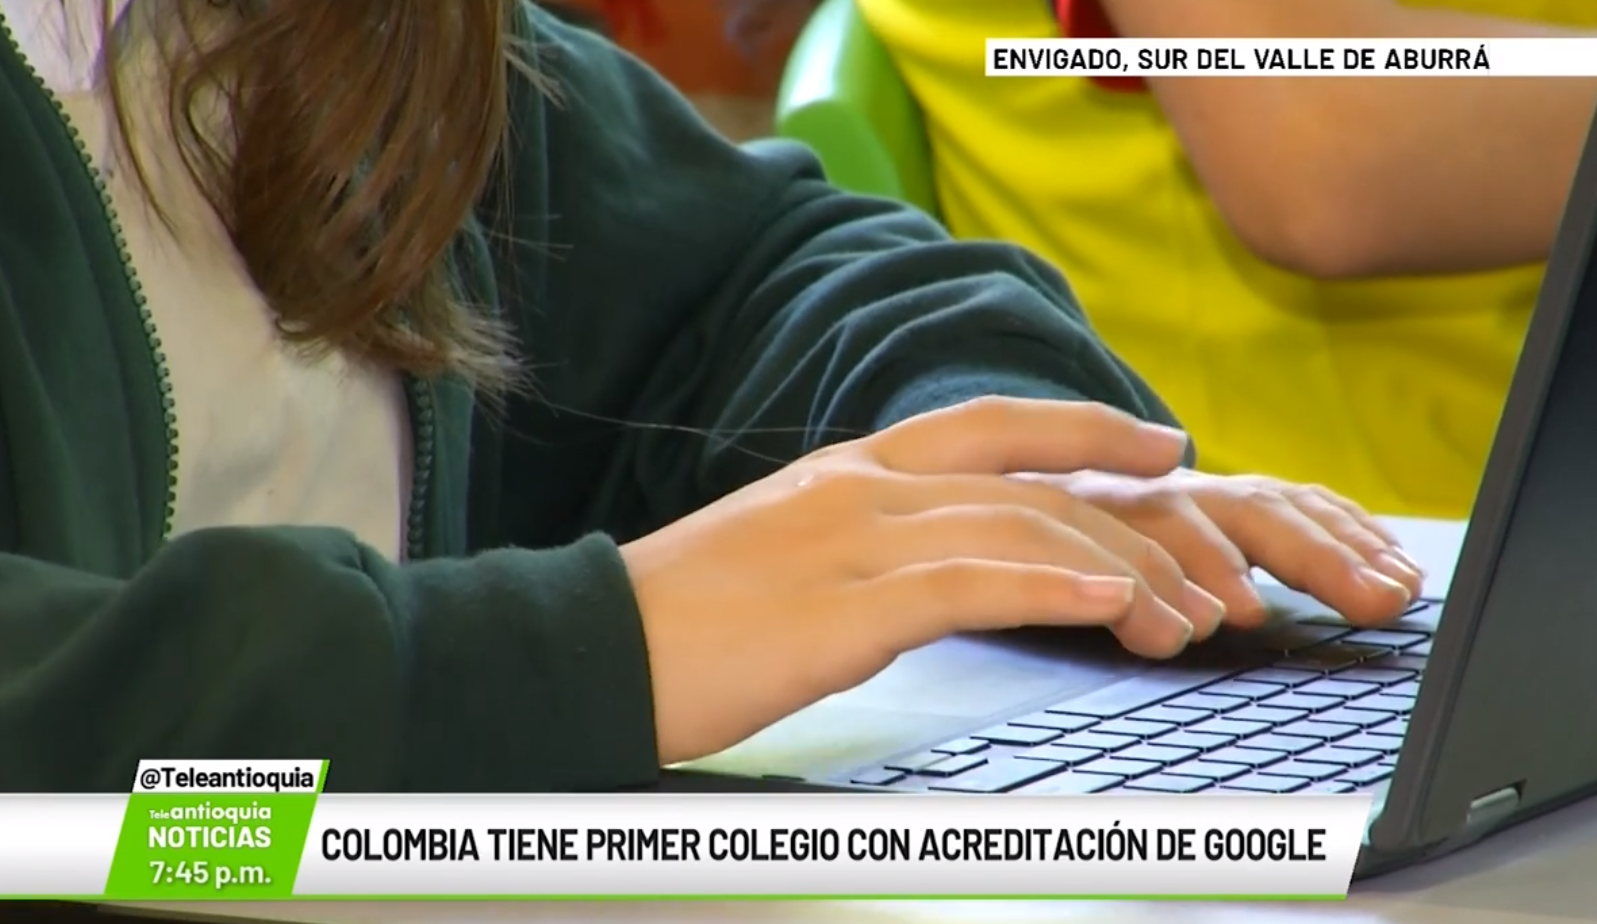 Colombia tiene primer colegio con acreditación de Google